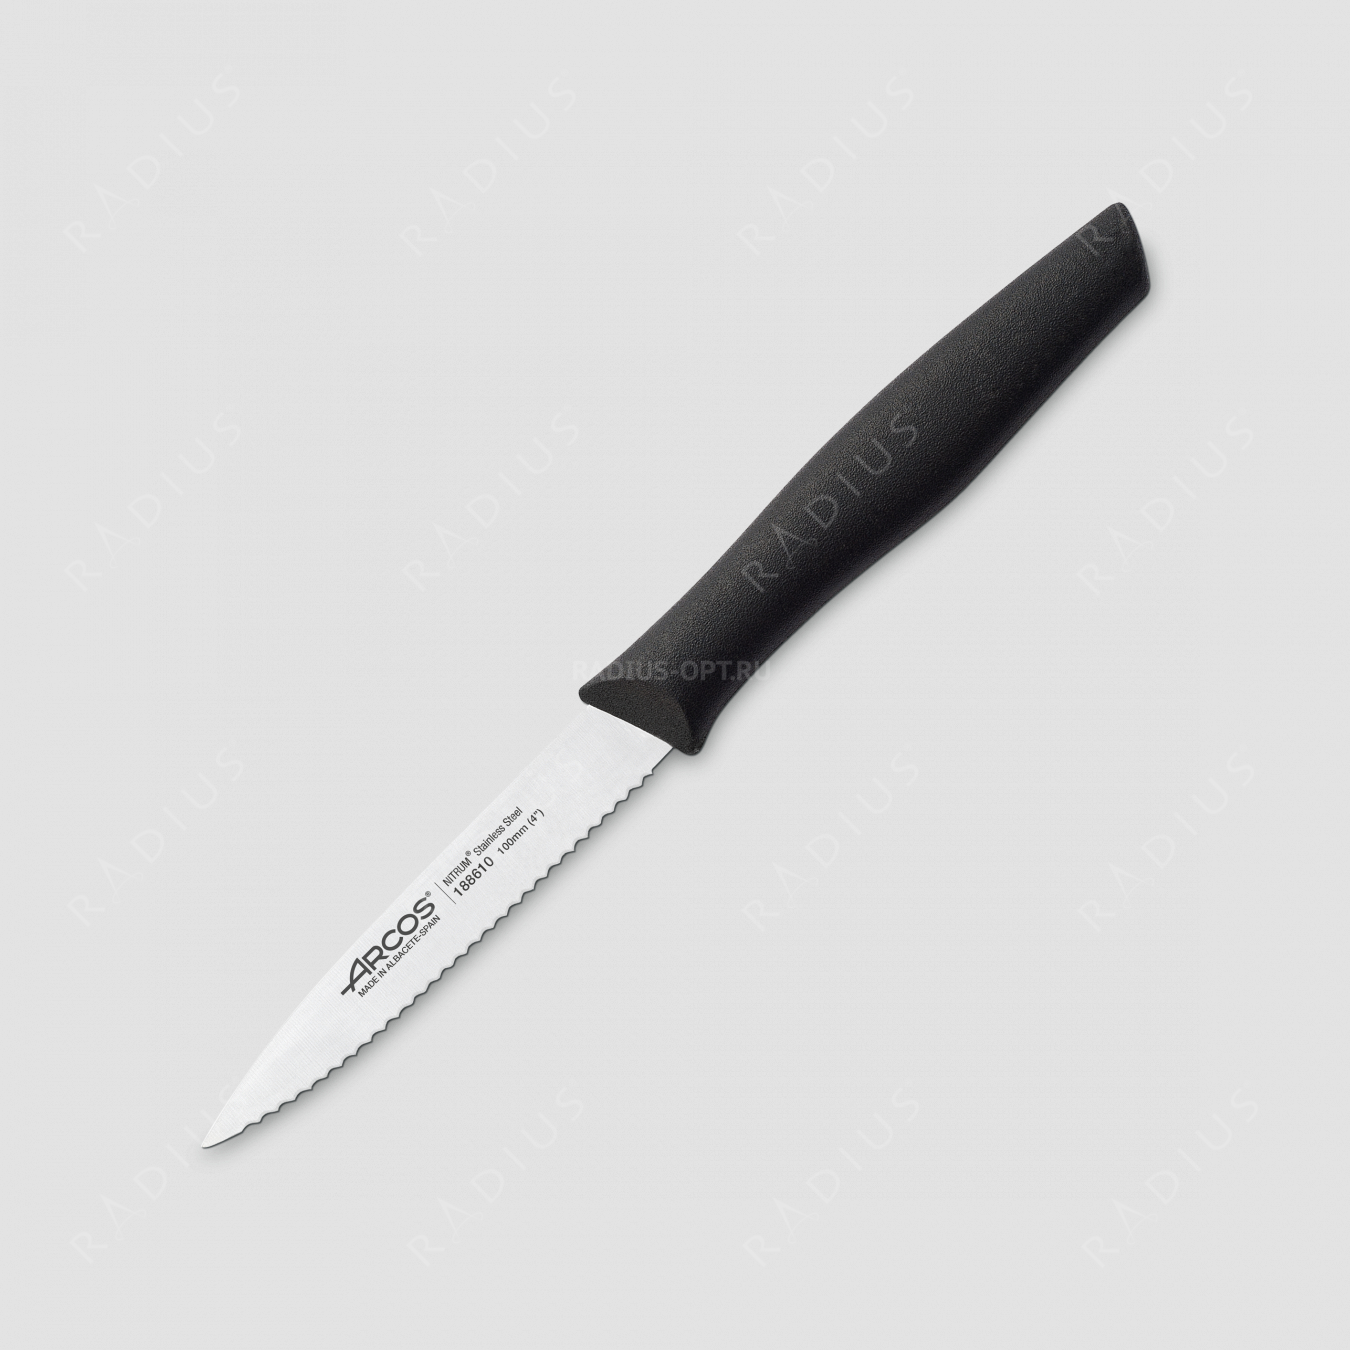 Нож кухонный для чистки и нарезки овощей с зубчатым лезвием 10 см, рукоять черная, серия Nova, ARCOS, Испания